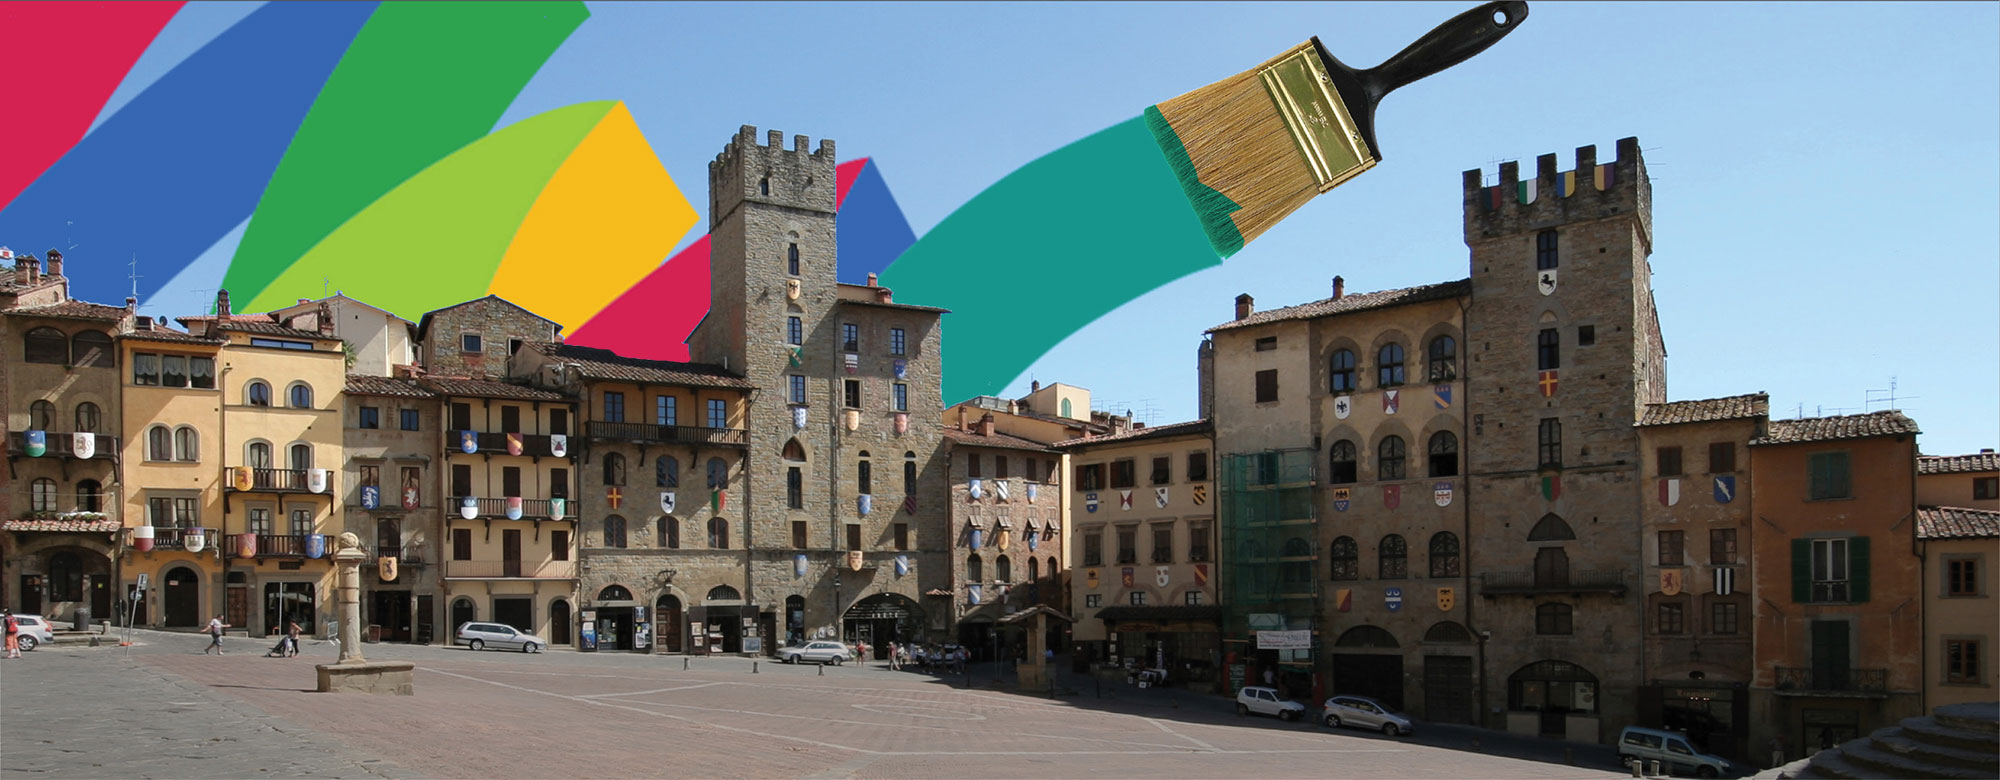 Piazza Grande Arezzo con vernici e colori